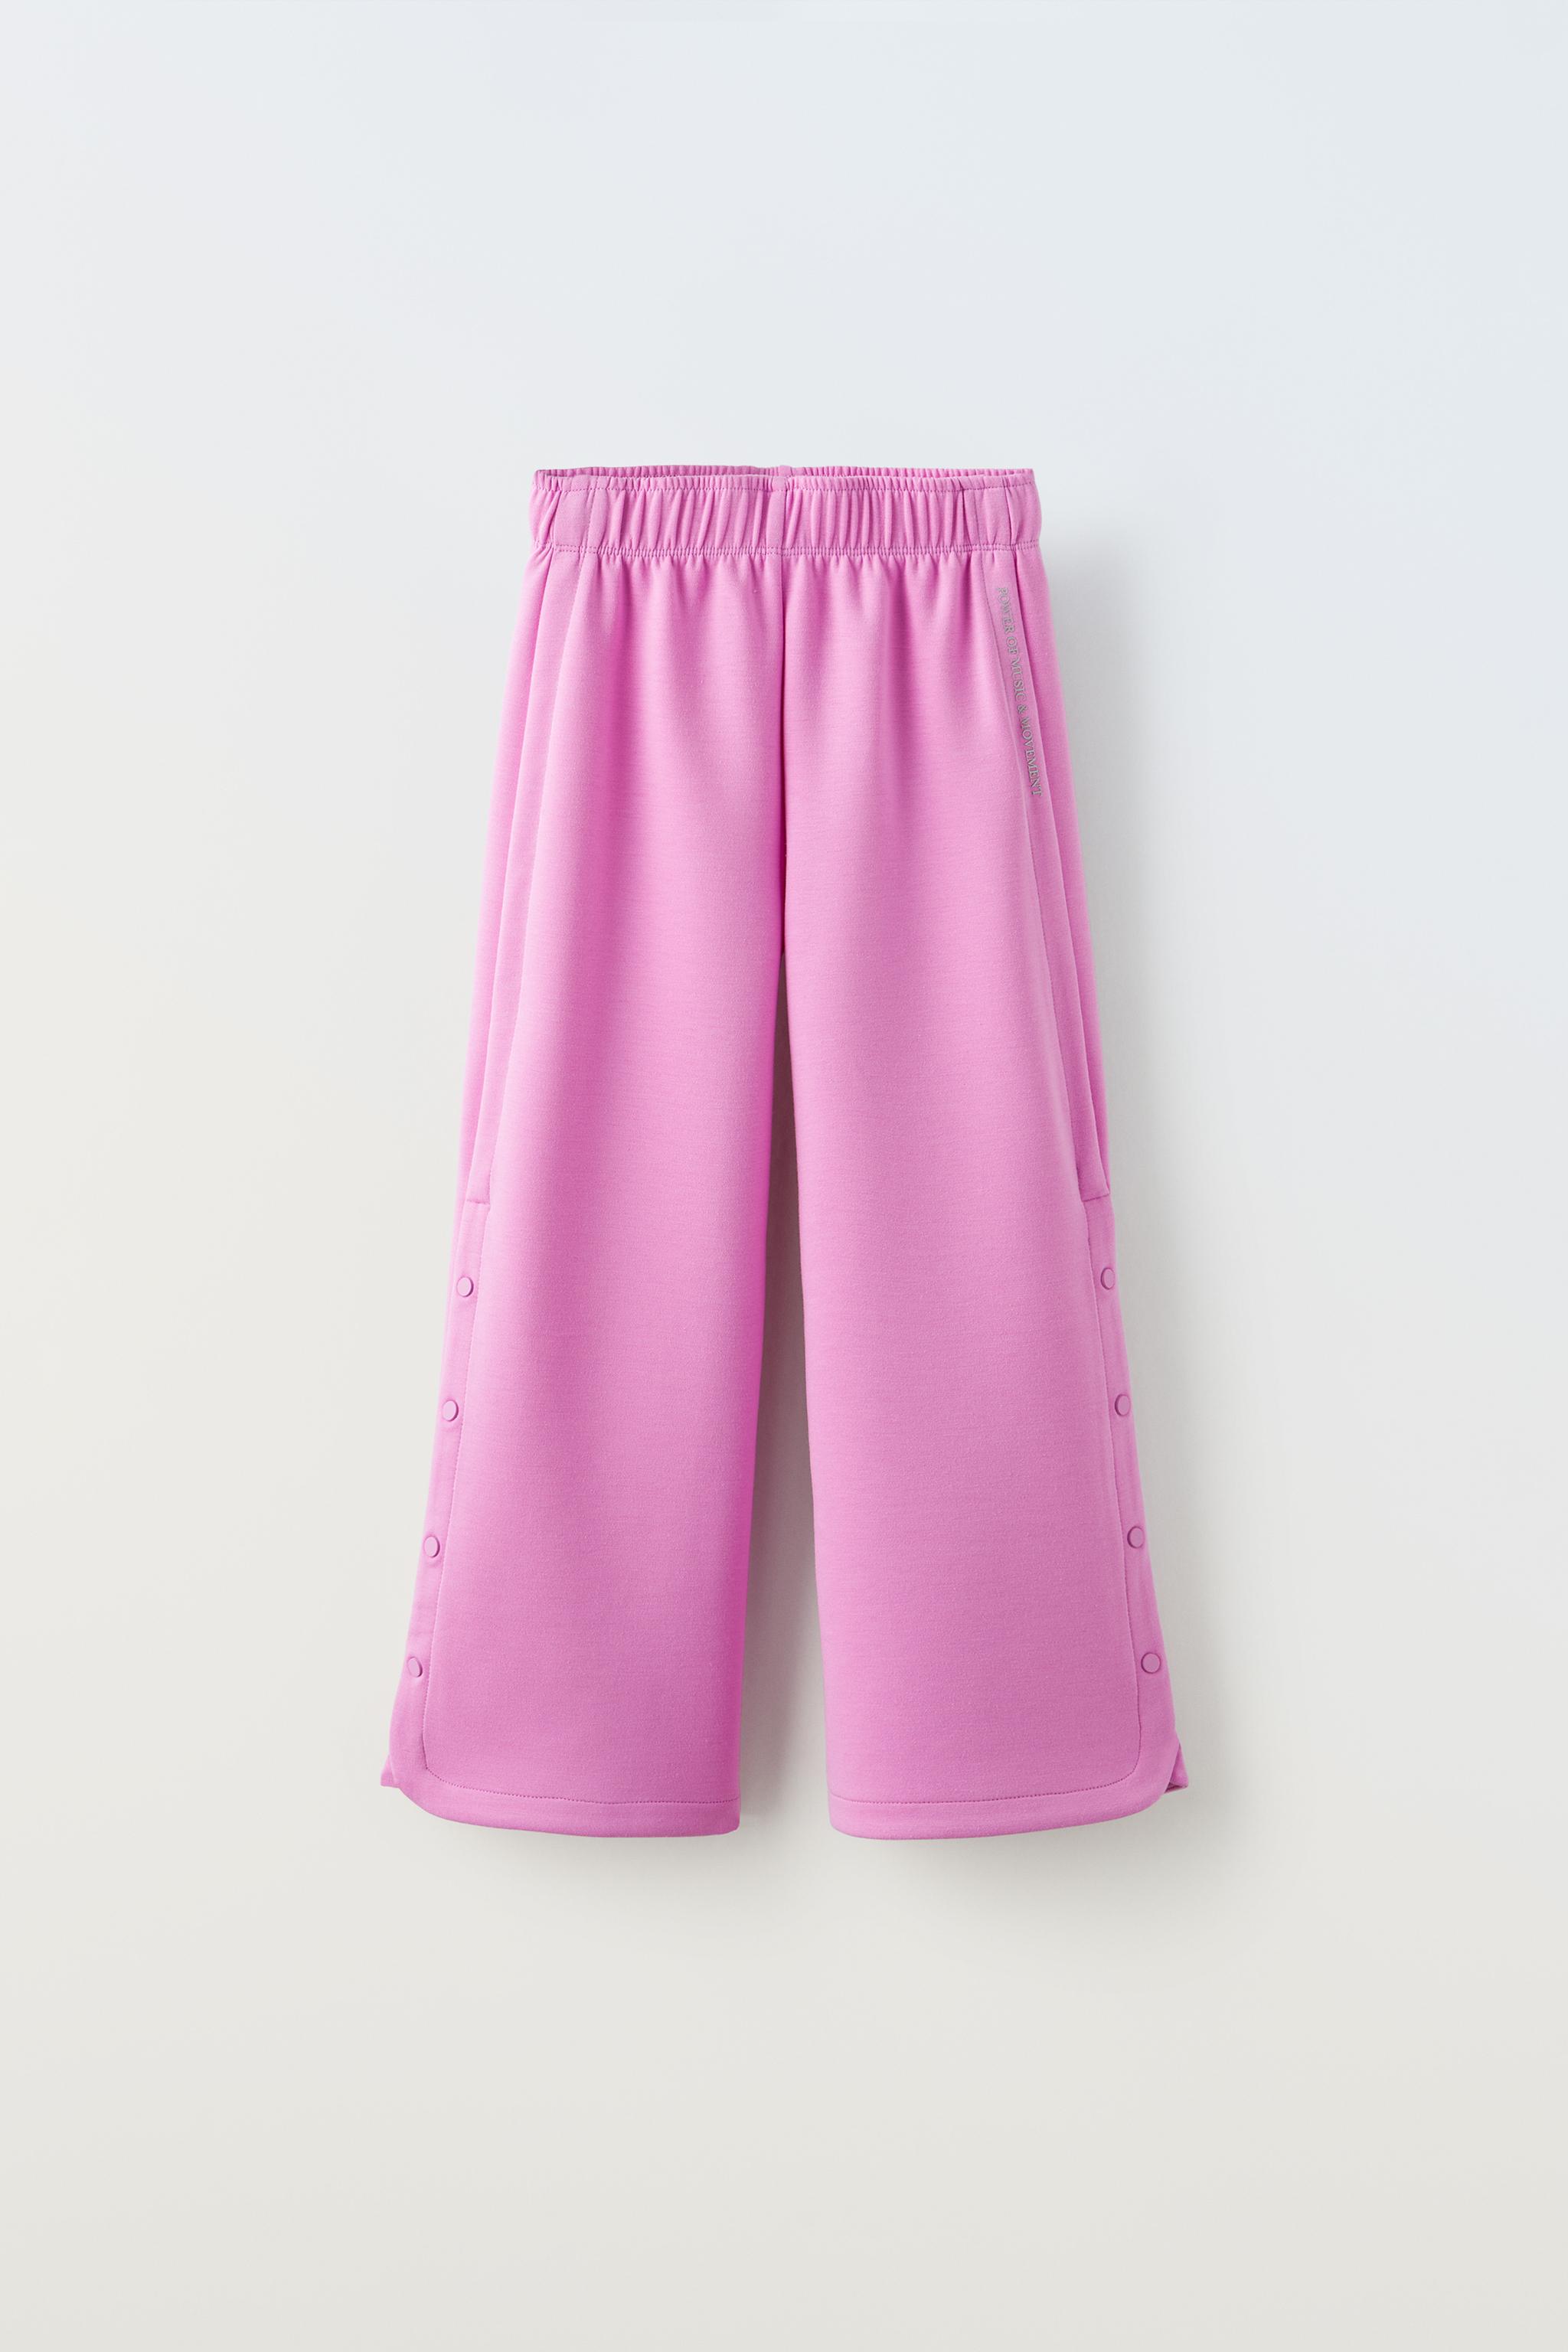 ZARA Women Size L Purple Print Pants